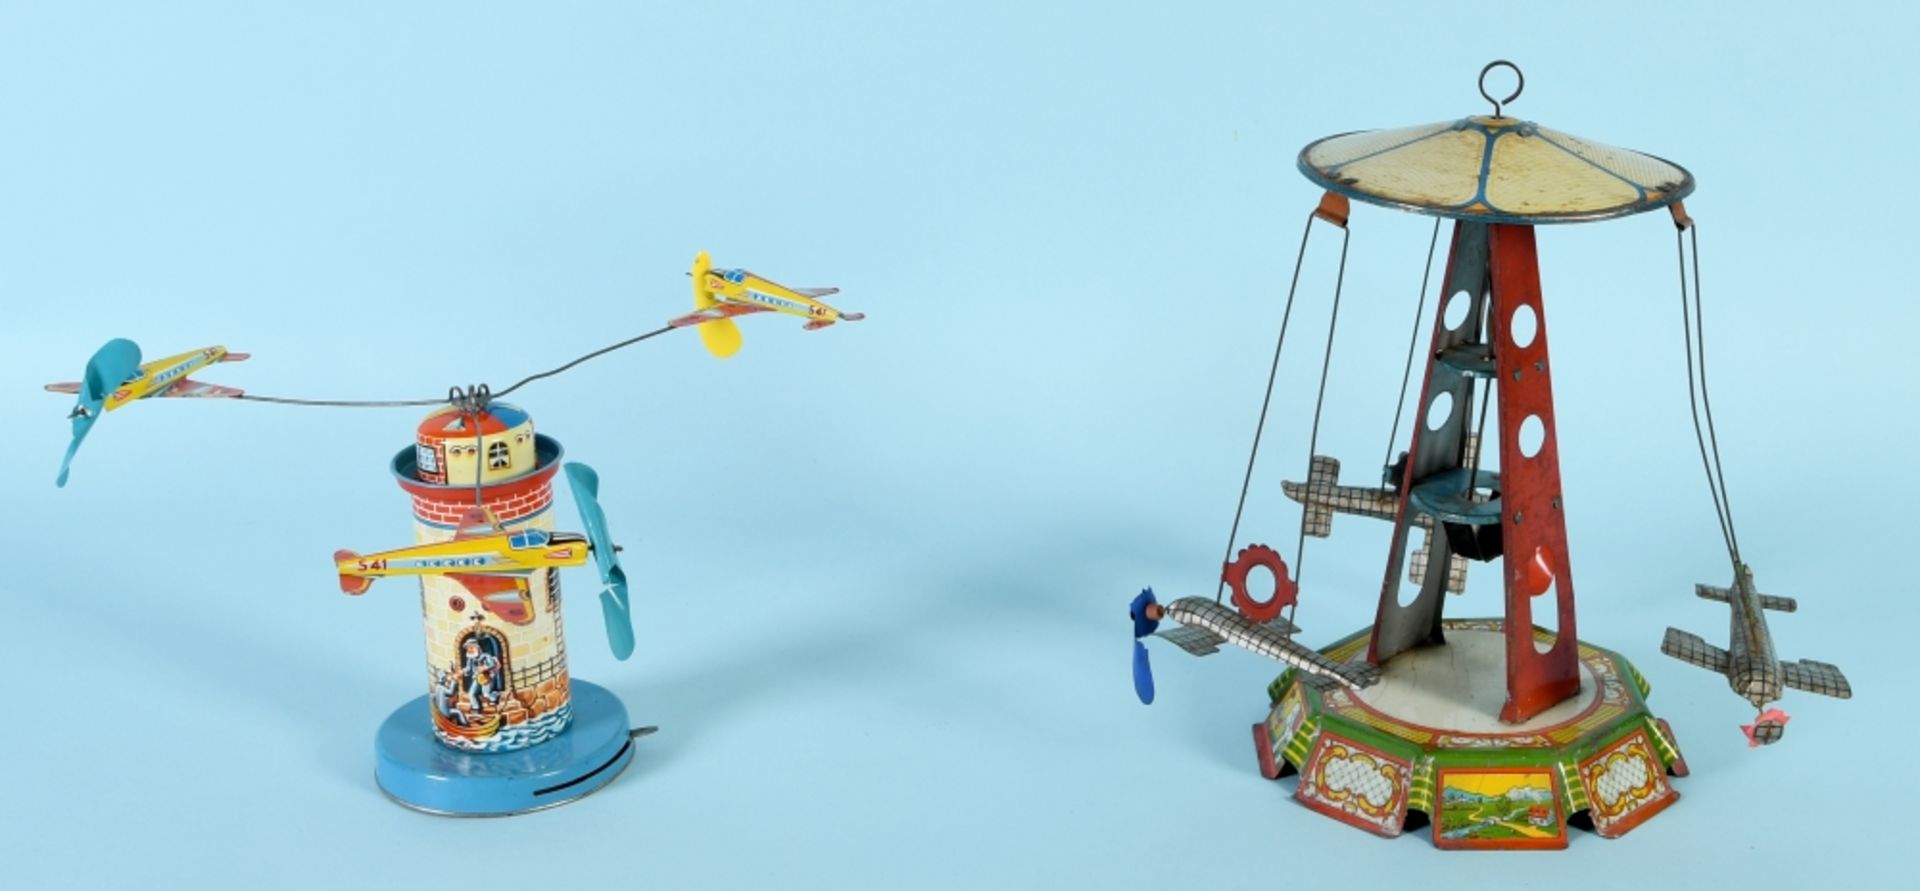 Blechspielzeug, 2 Modelle - Flugzeugkarussells